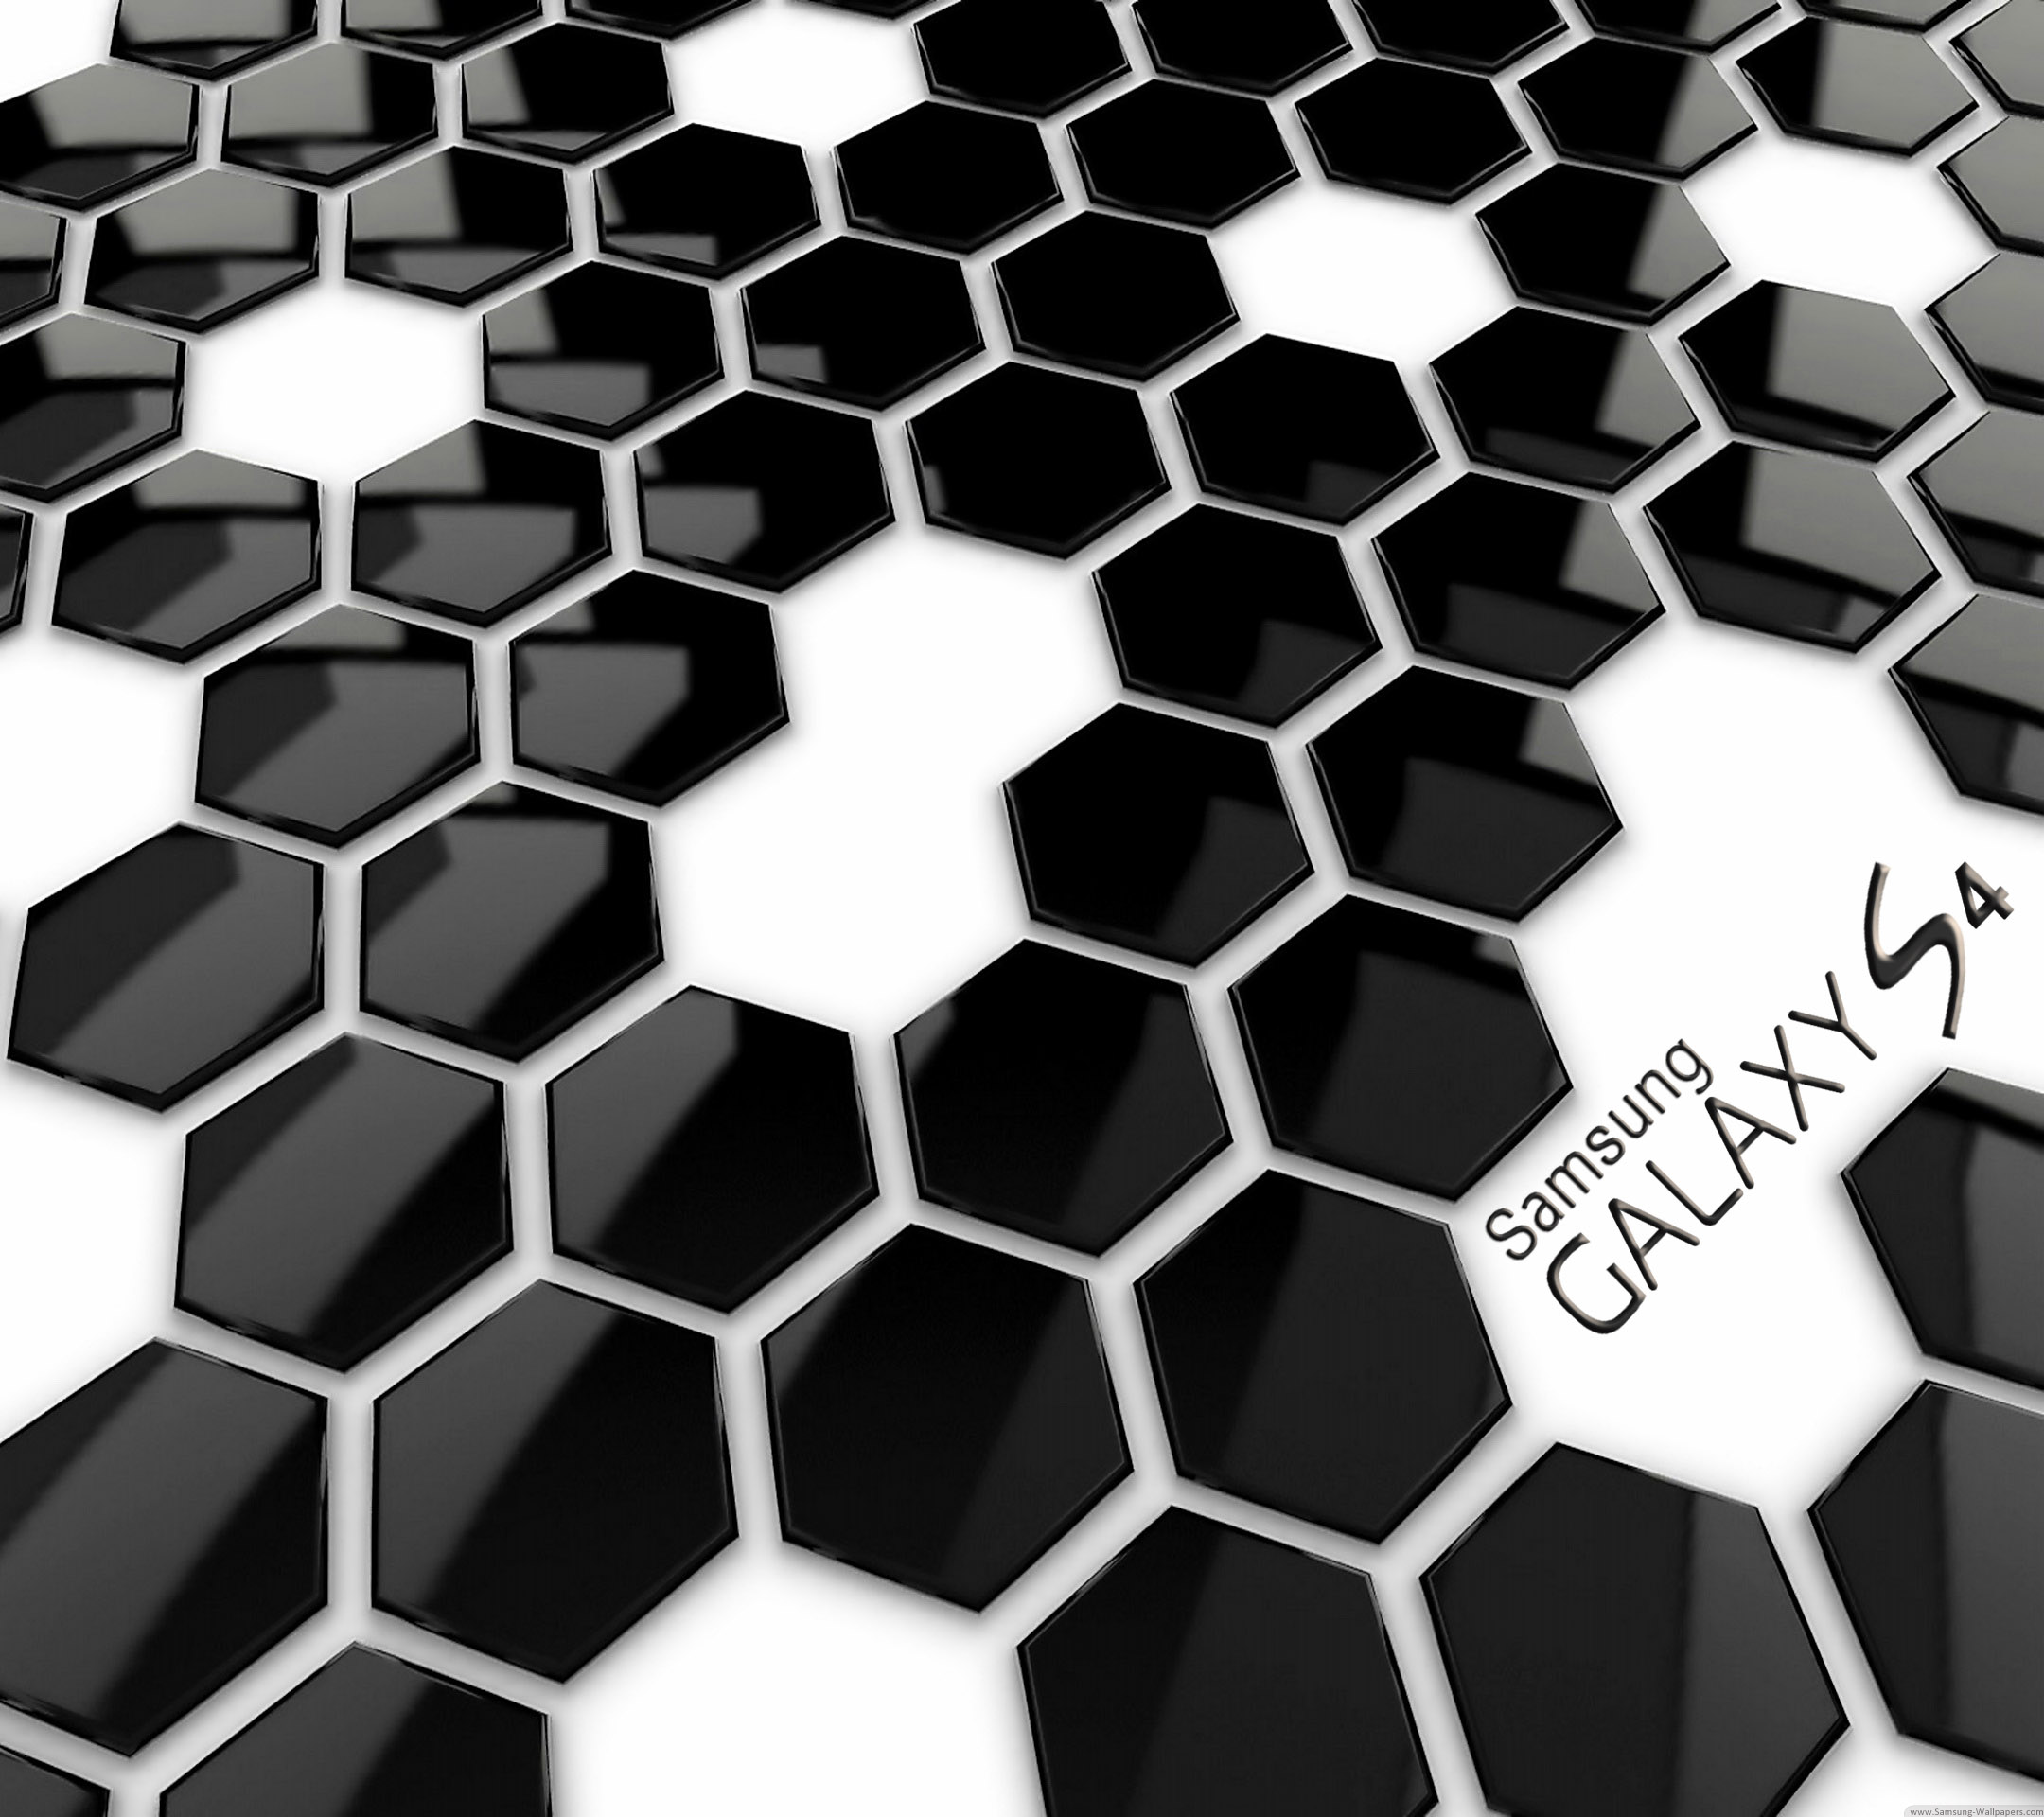 Honeycomb 3D Desktop Samsung Galaxy S4 2160x1920 Wallpaper ...